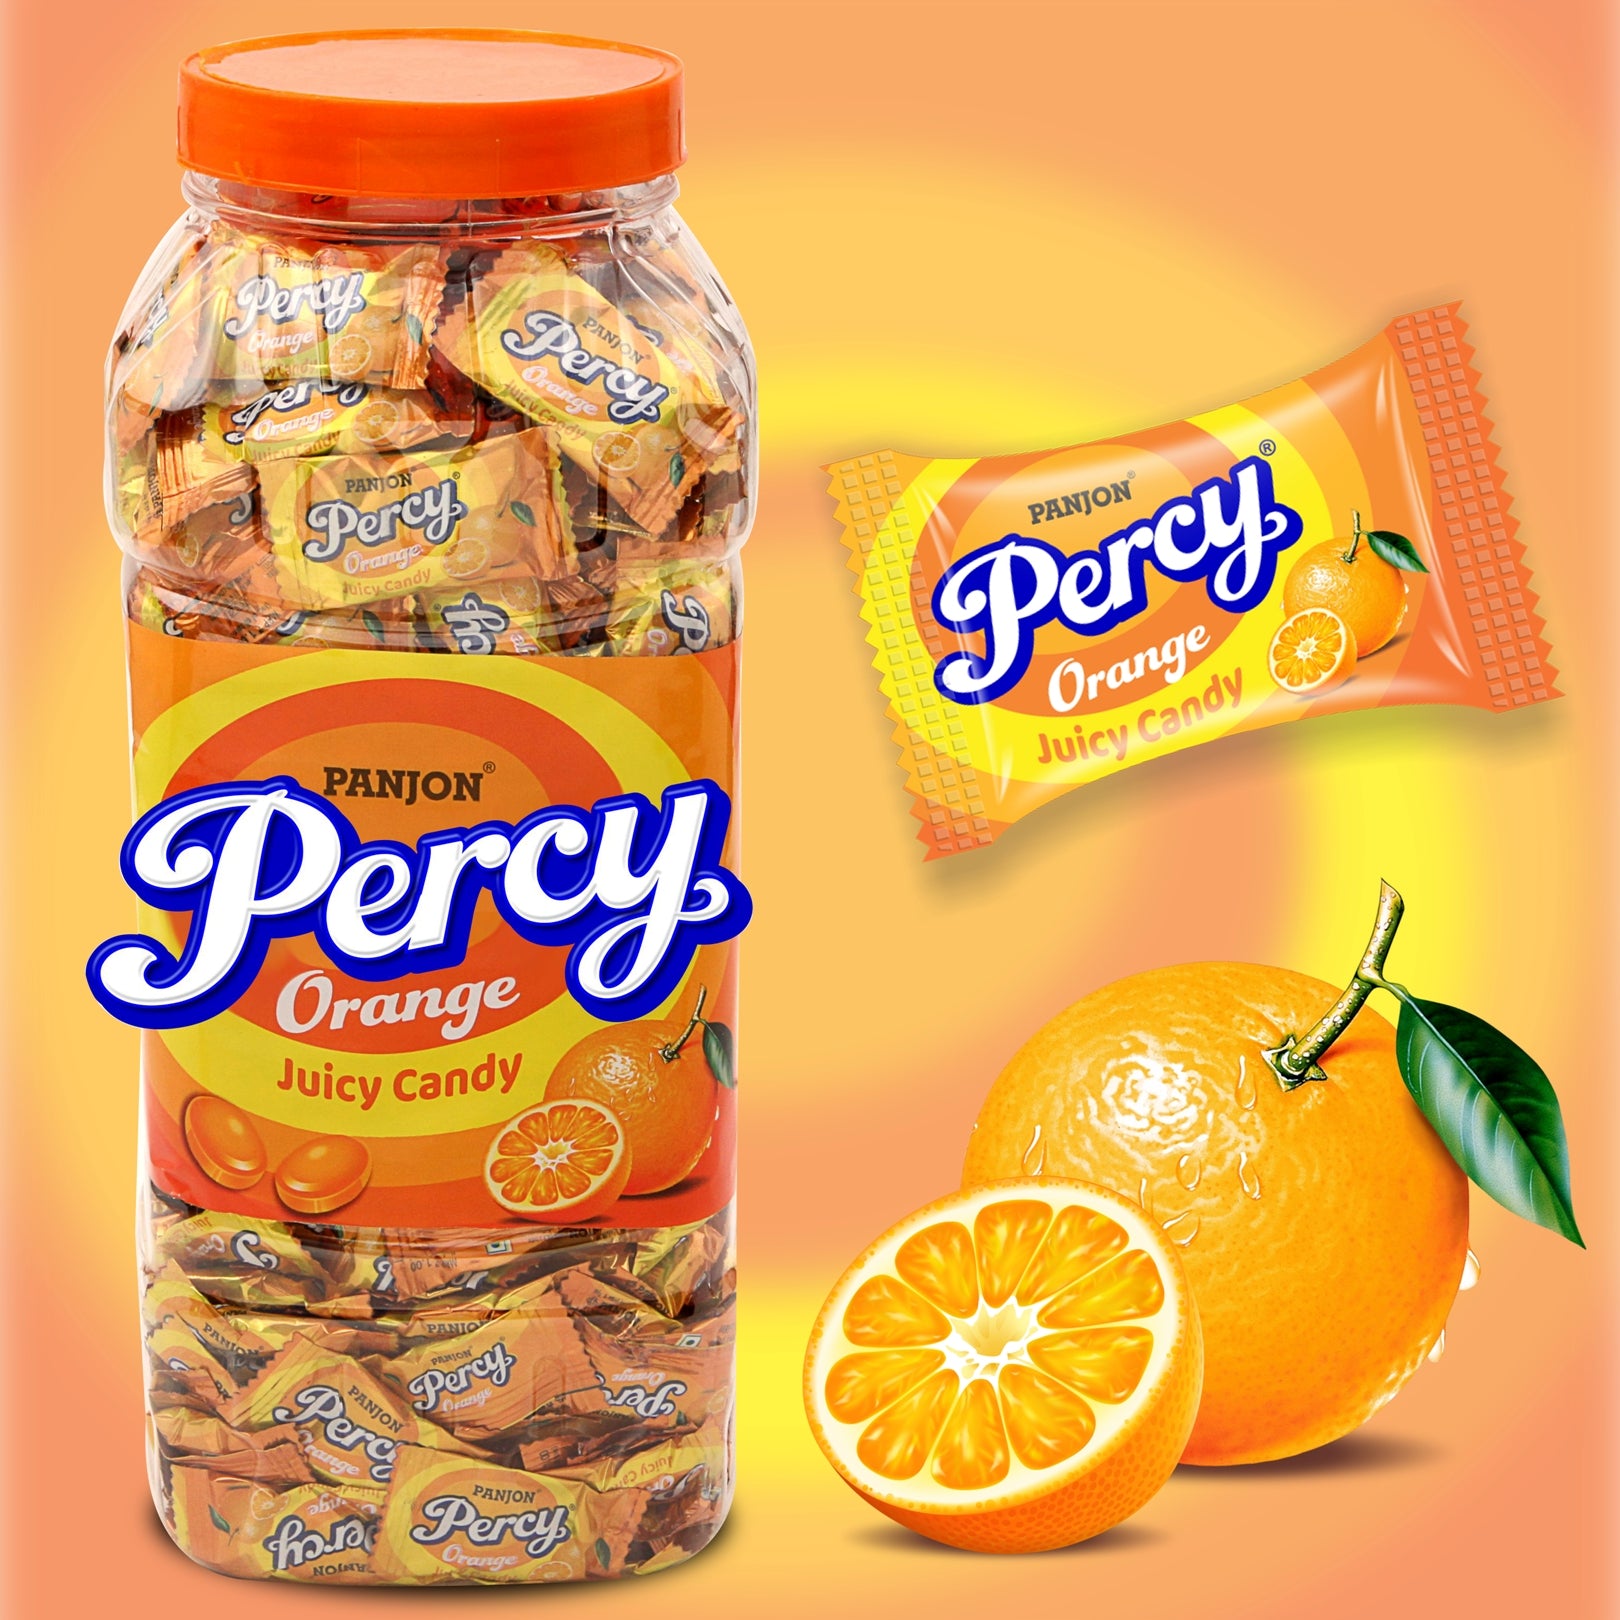 Percy Orange Candy Toffee Jar, 875g